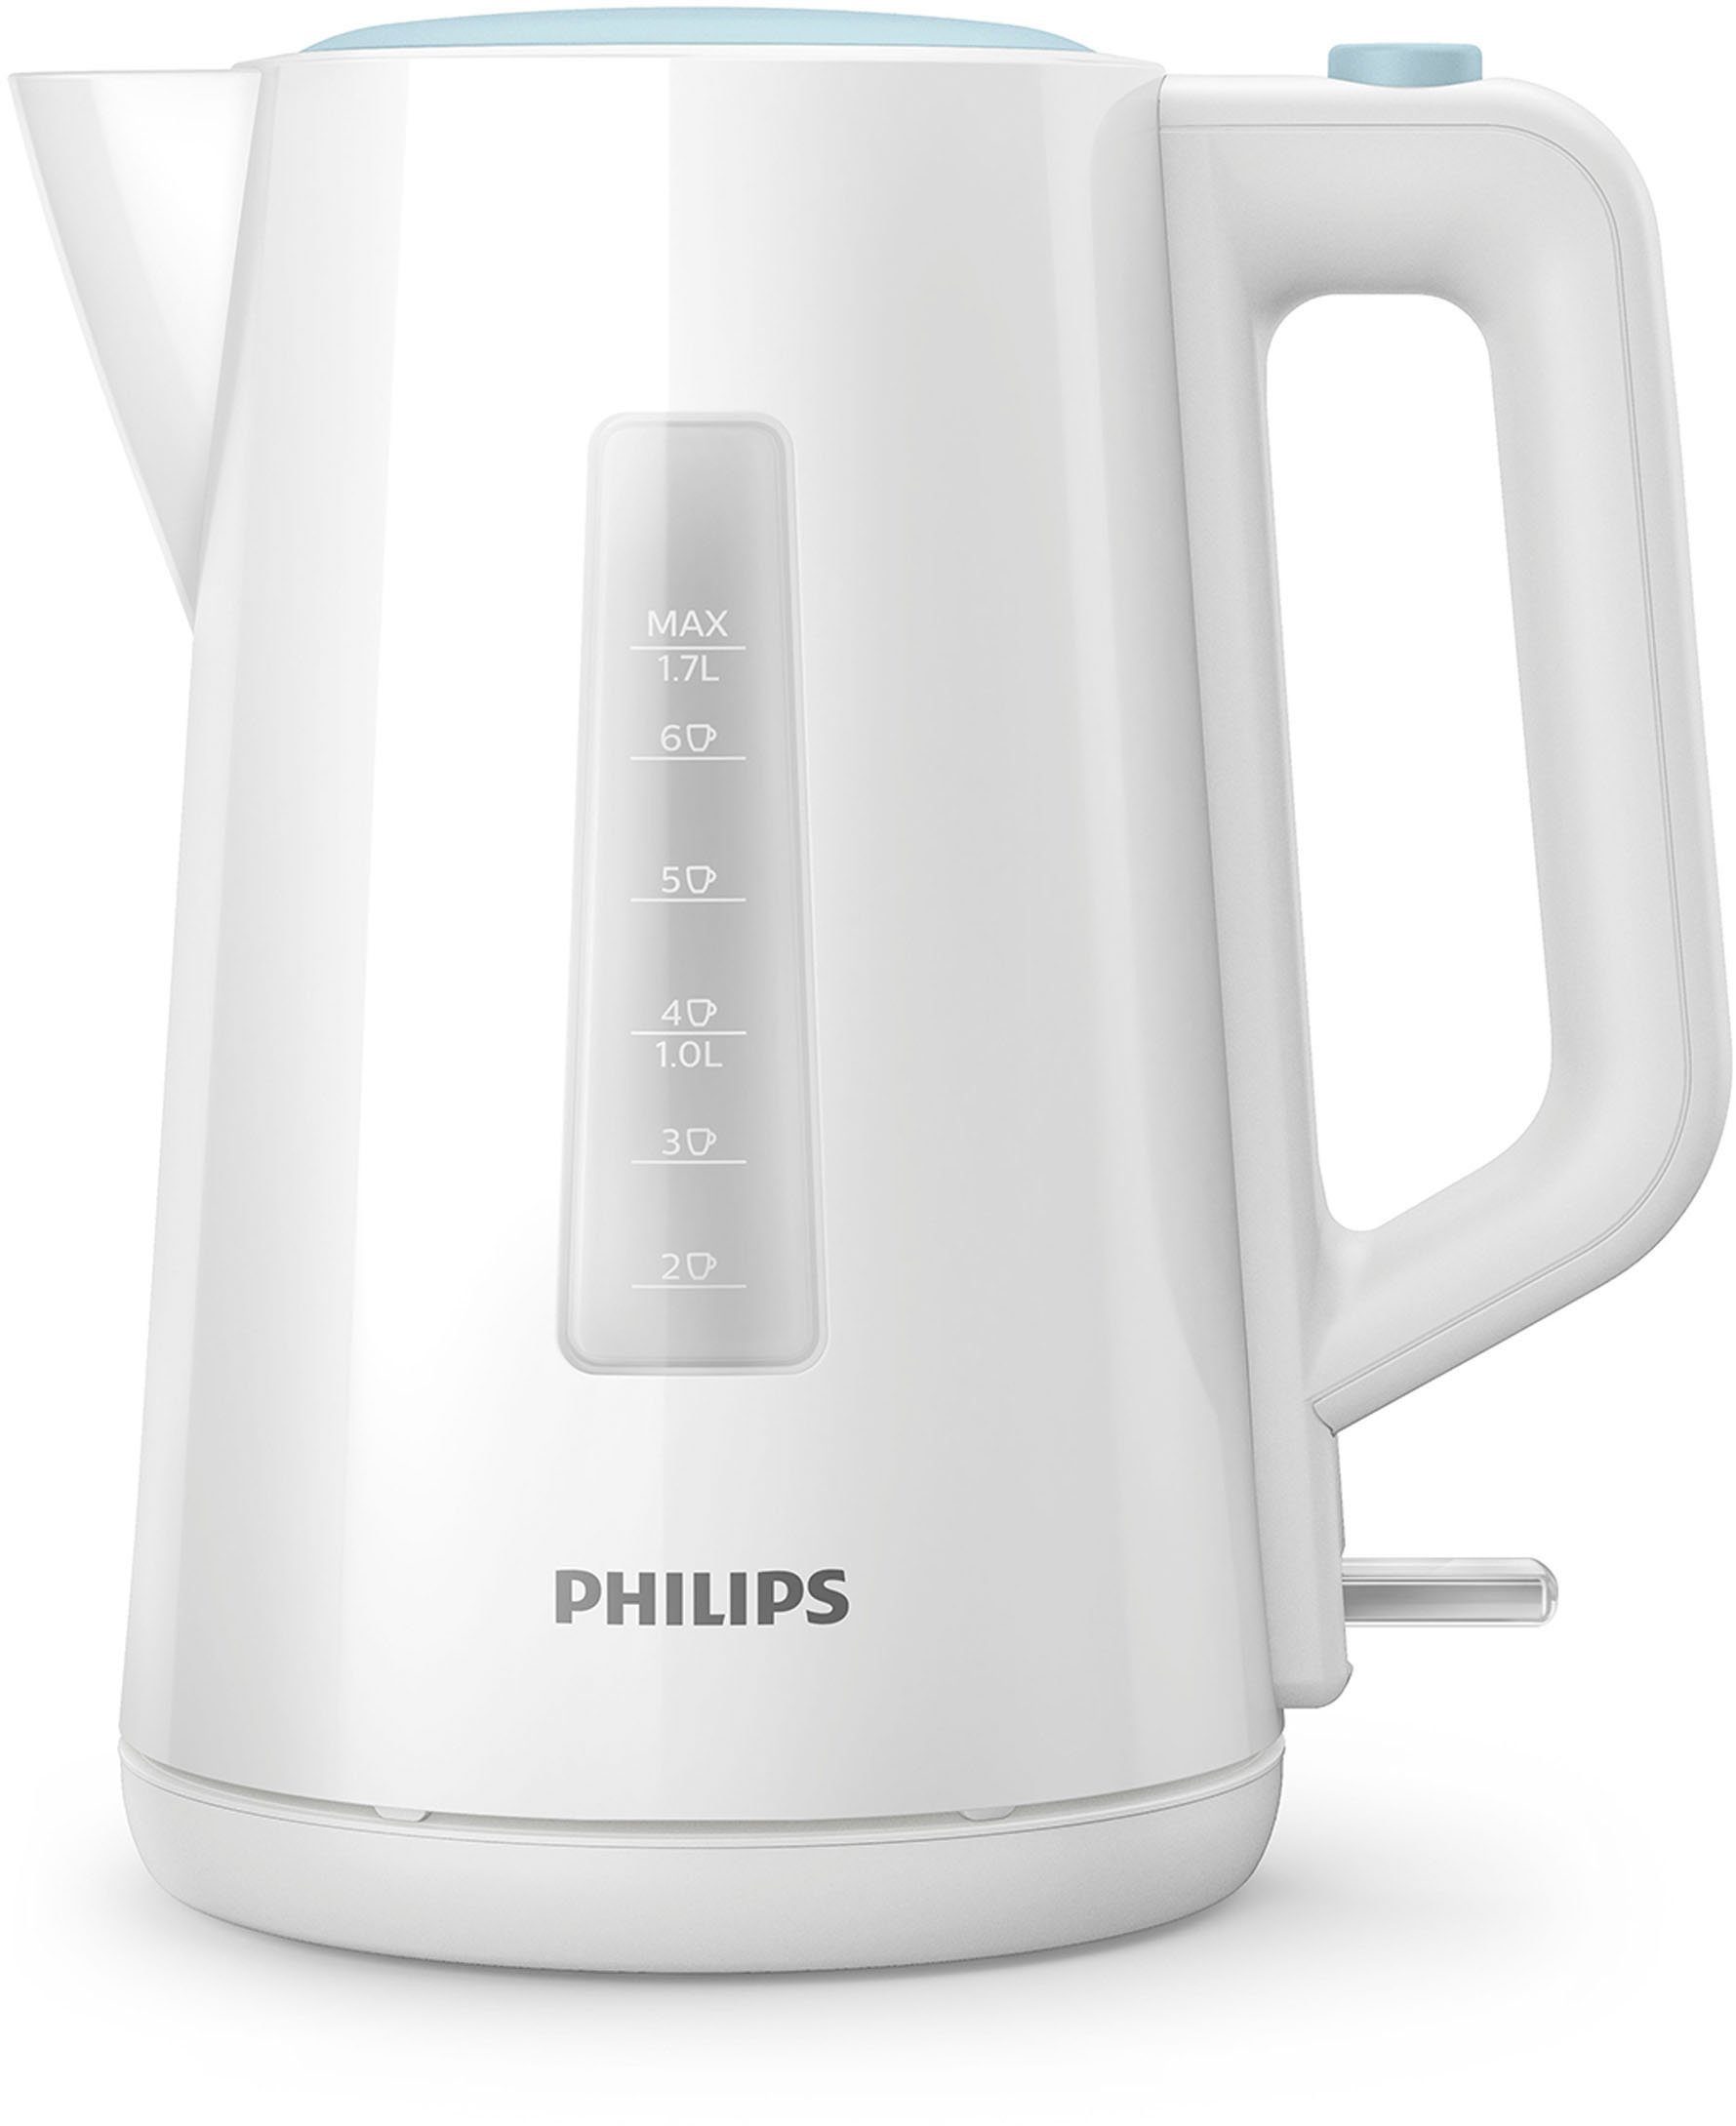 Philips Wasserkocher HD9318/00 Serie 3000, 1,7 l, 2200 W, Trockengehschutz